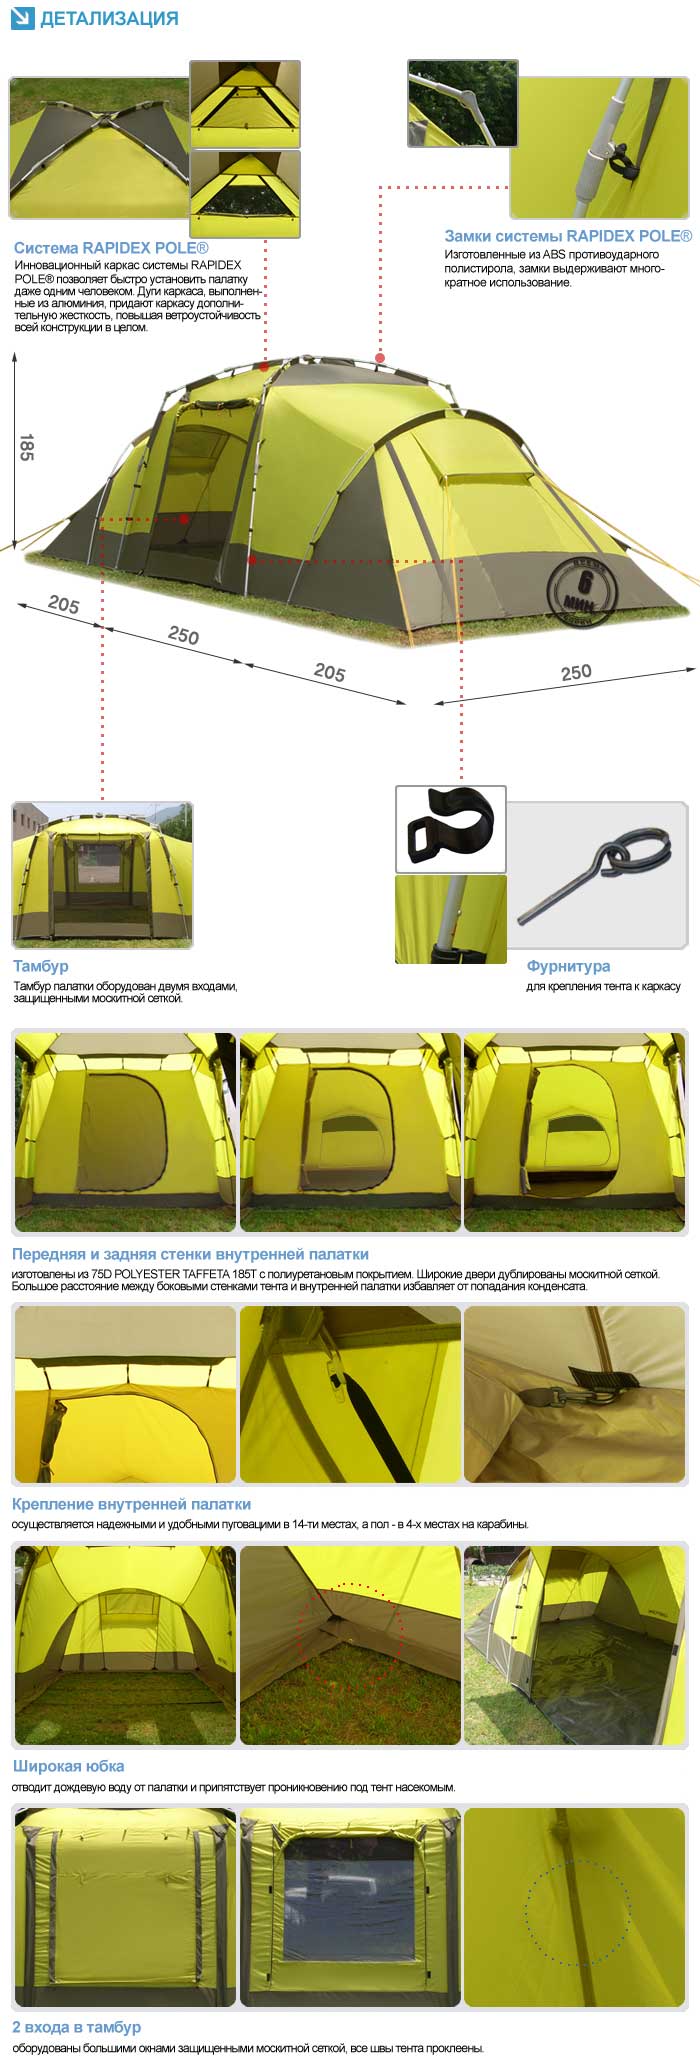 конструктивные особенности палатки Maverick Tourer 400